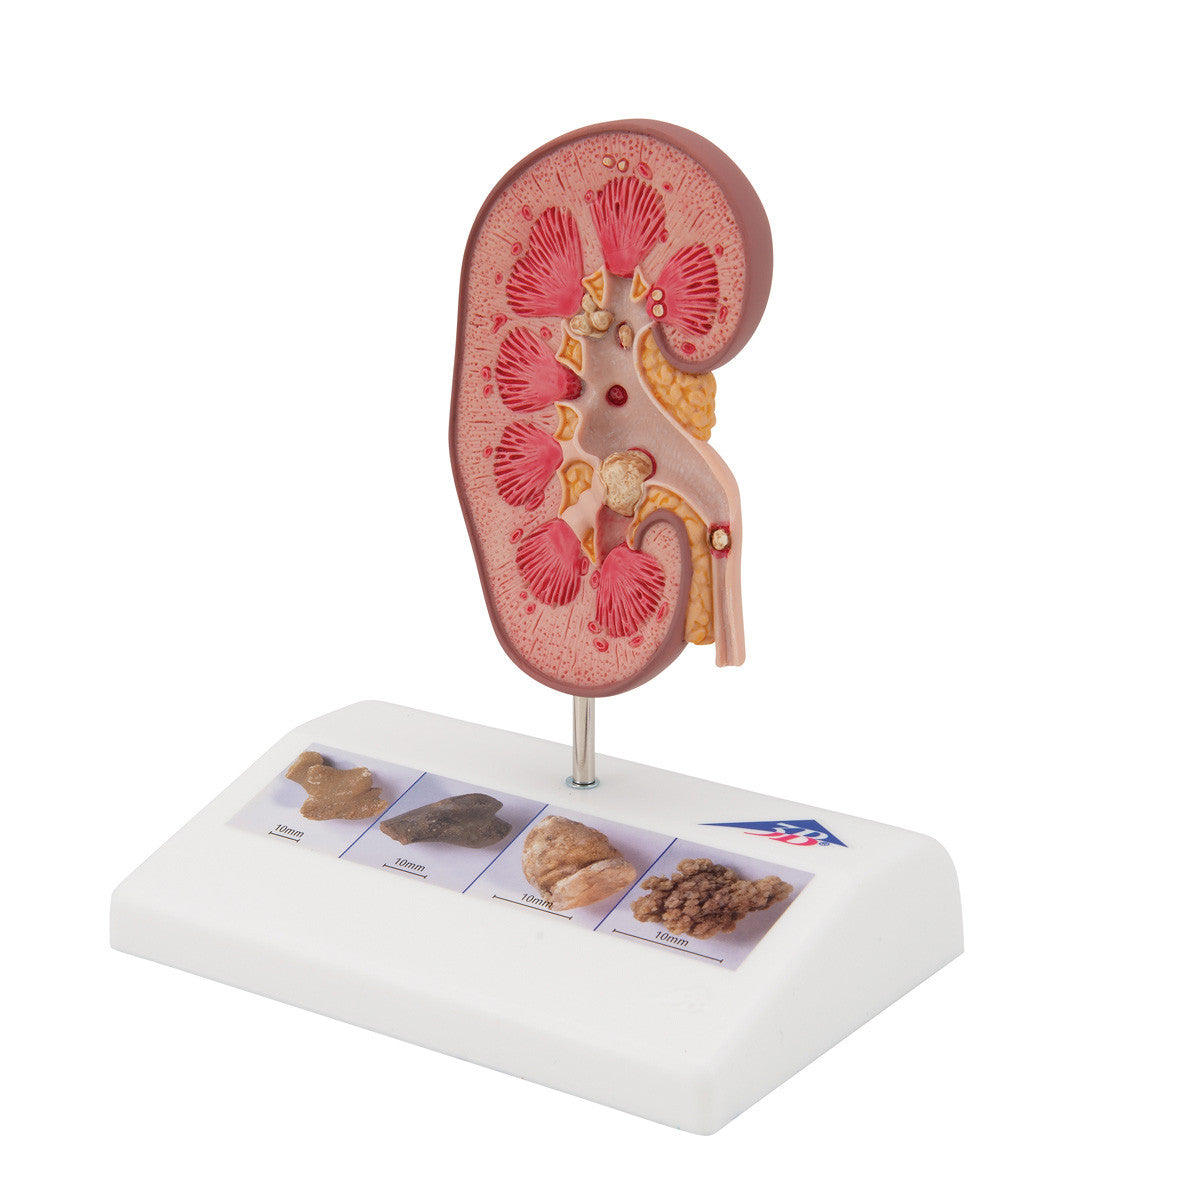 Kidney Stone Model | 3B Scientific K29